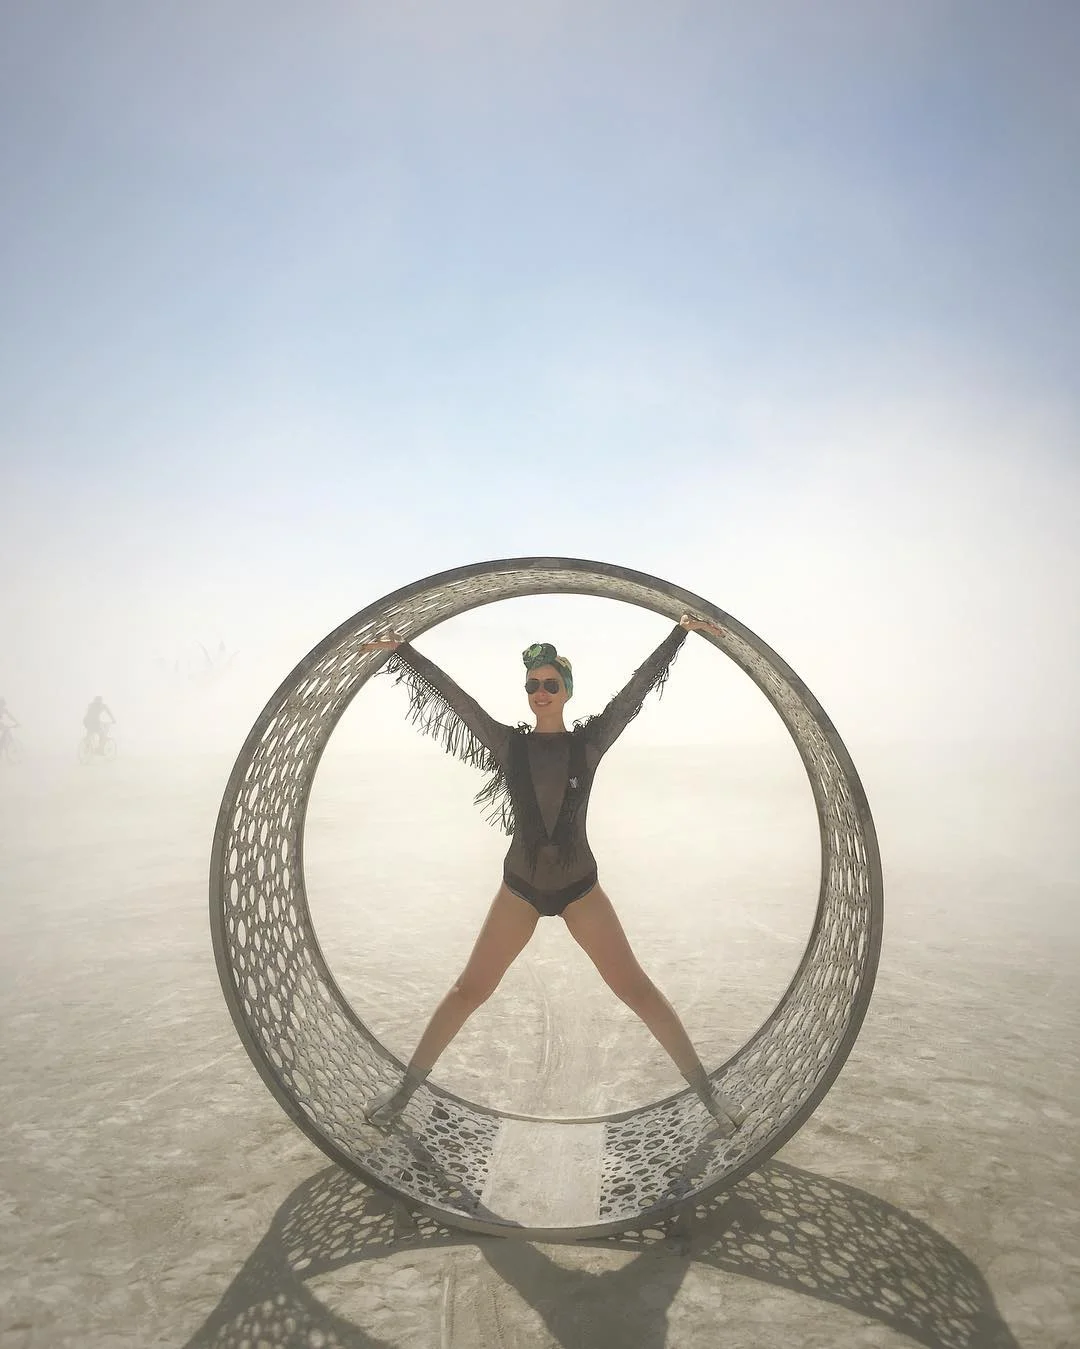 Пыль, голые тела и современное искусство: крутые фото с фестиваля Burning Man 2017 - фото 336387